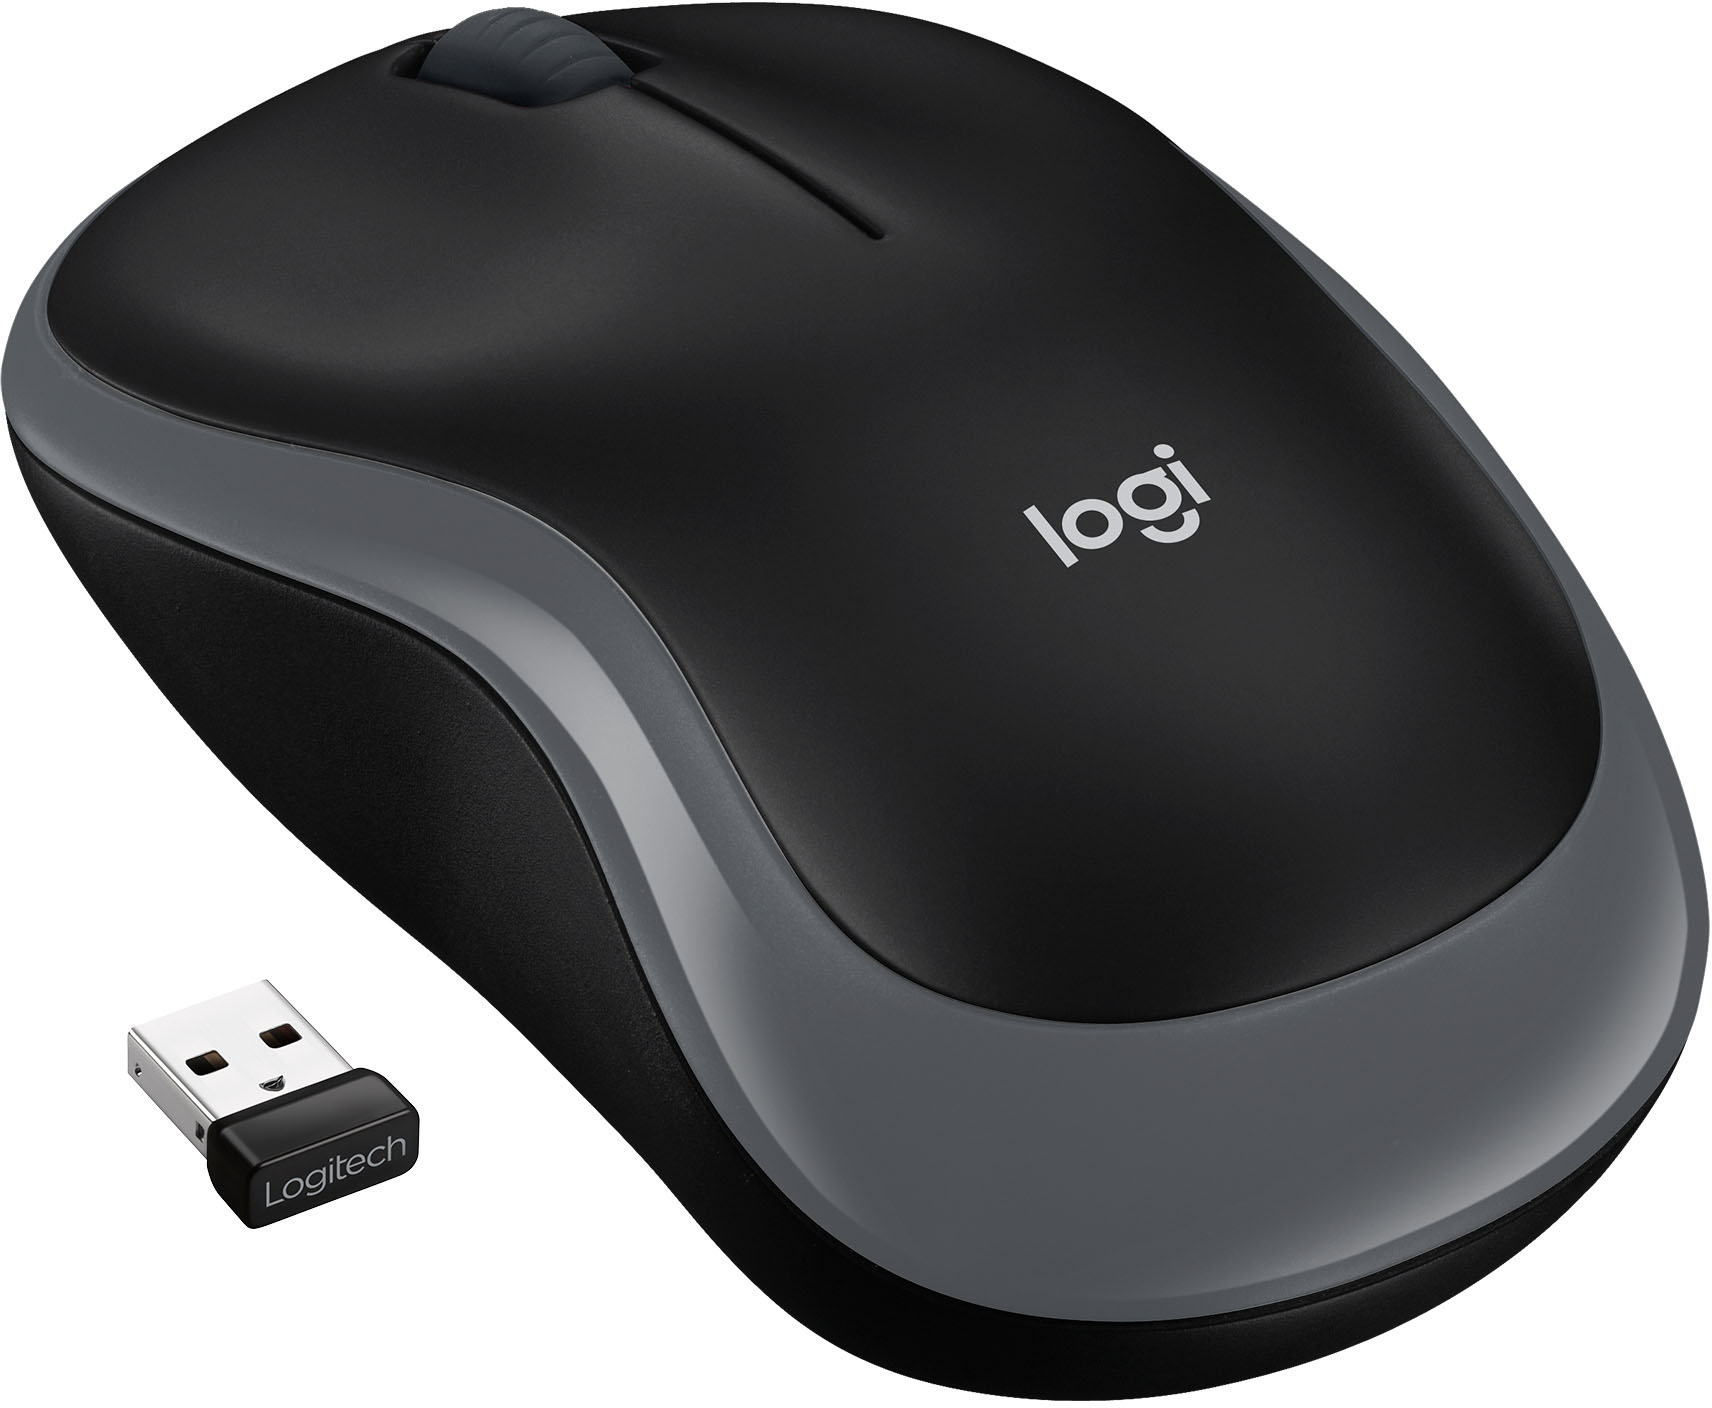 Buy Logitech Advanced Full-Size Wireless Mouse at Ubuy Uganda